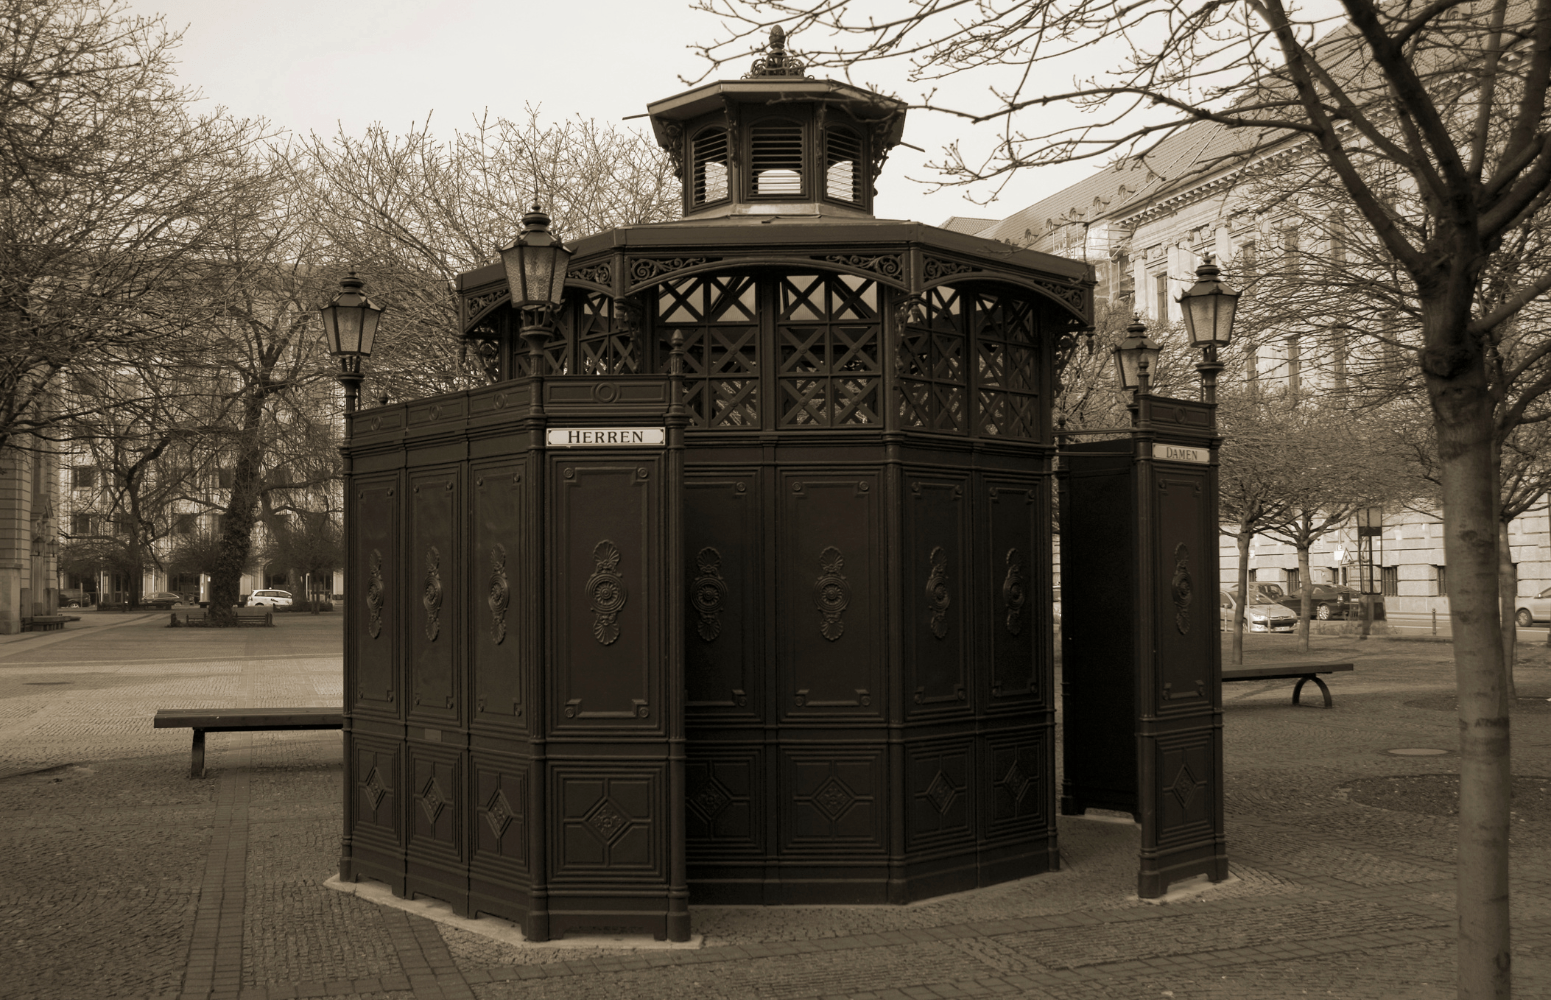 Historical public toilet in Berlin, Germany